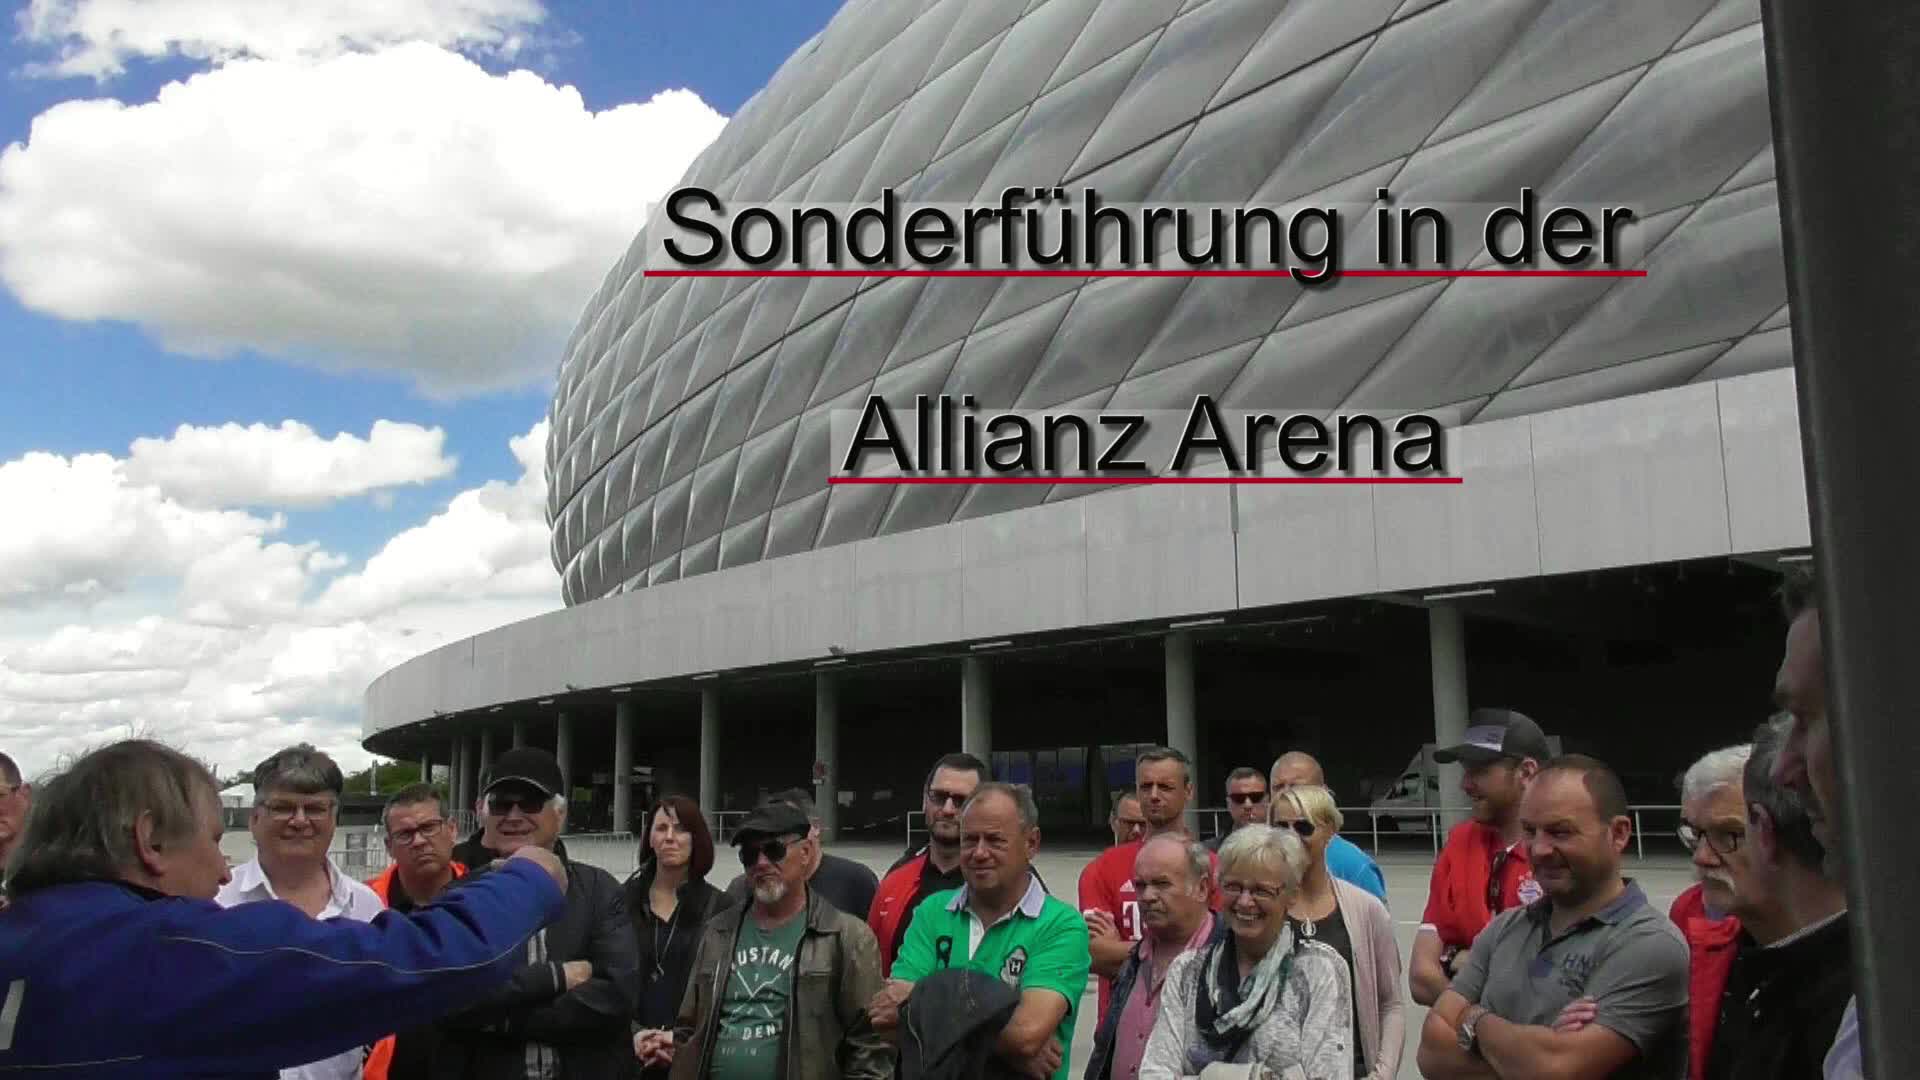 Sonderführung in der Allianz Arena